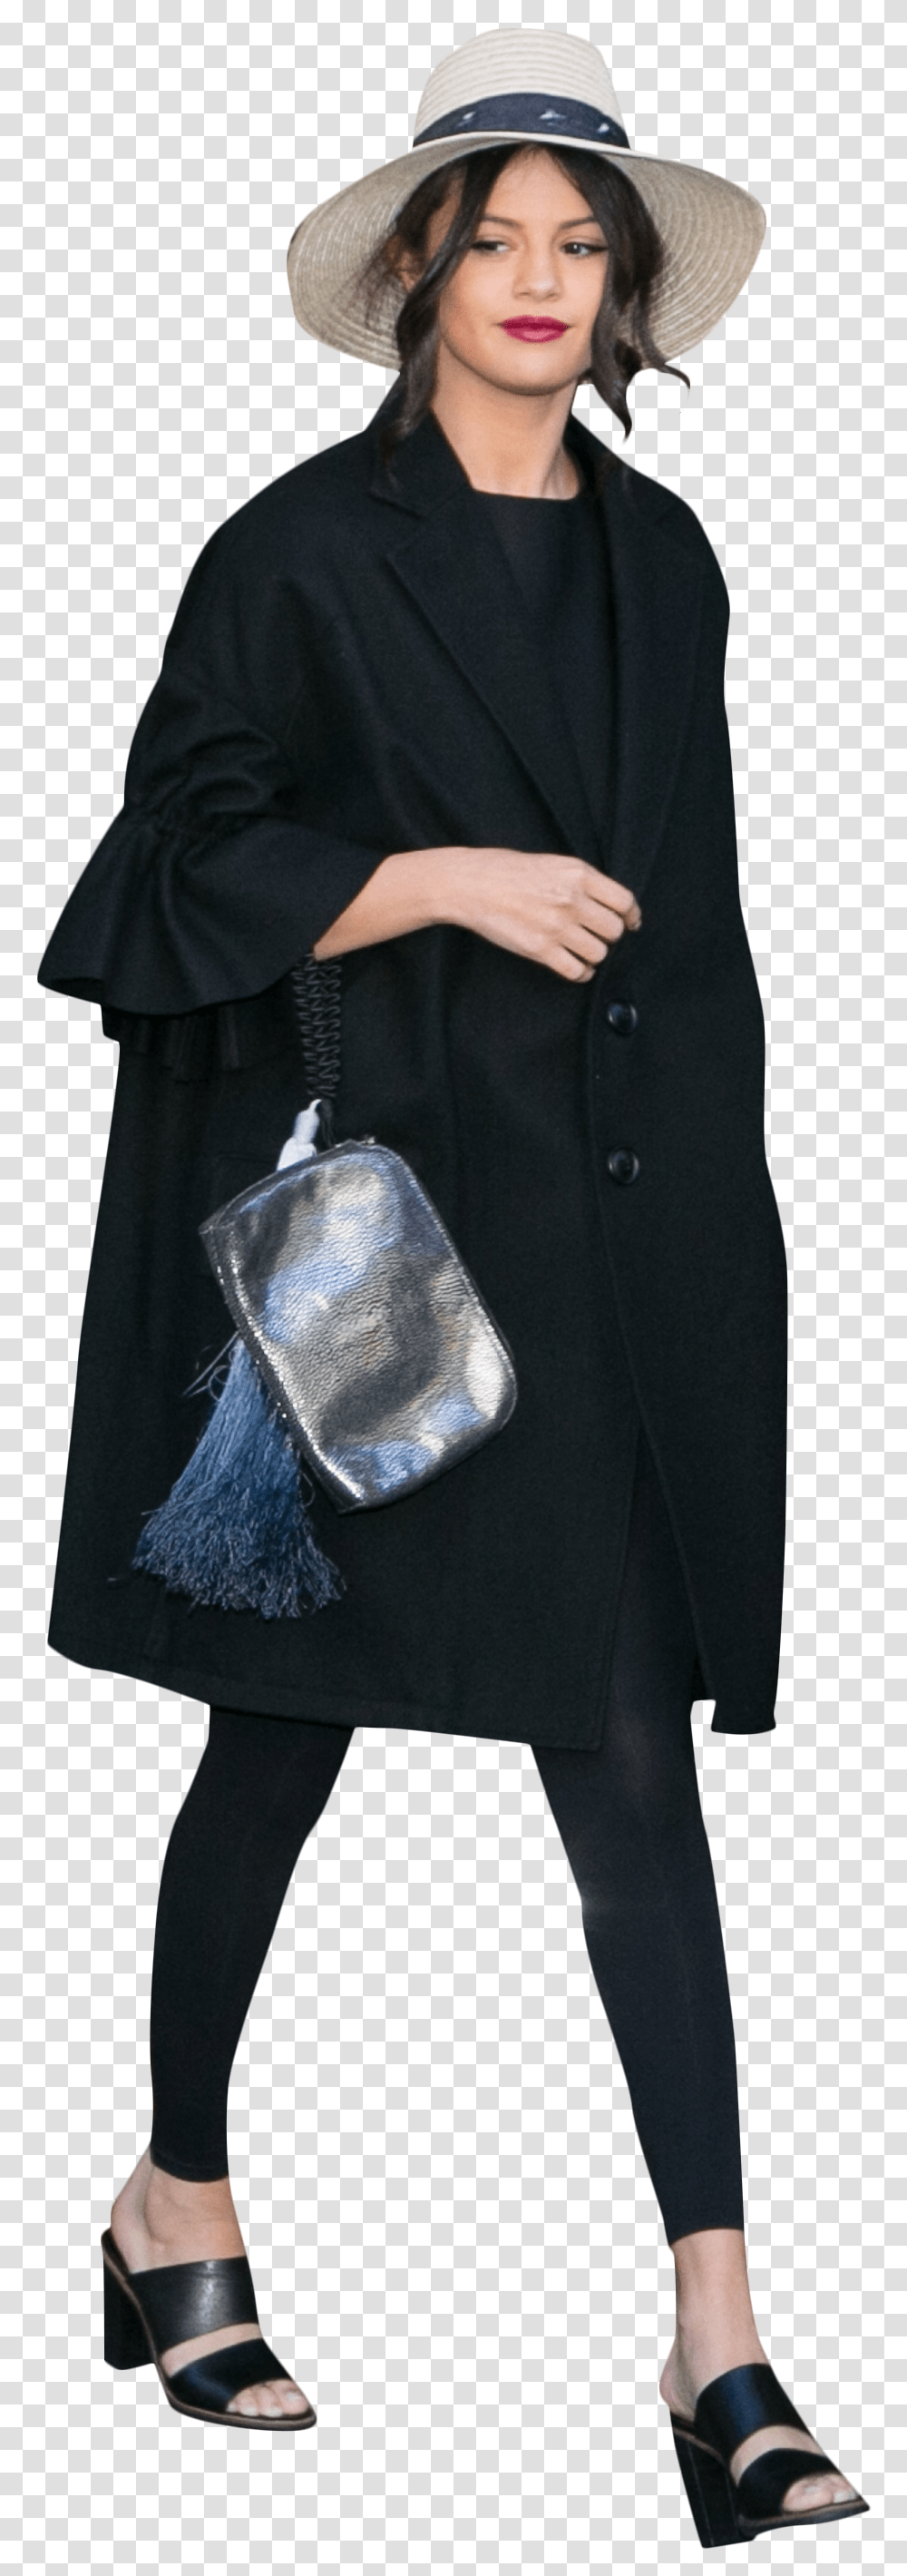 Selena Gomez Black Dress Portable Network Graphics, Hat, Accessories, Handbag Transparent Png